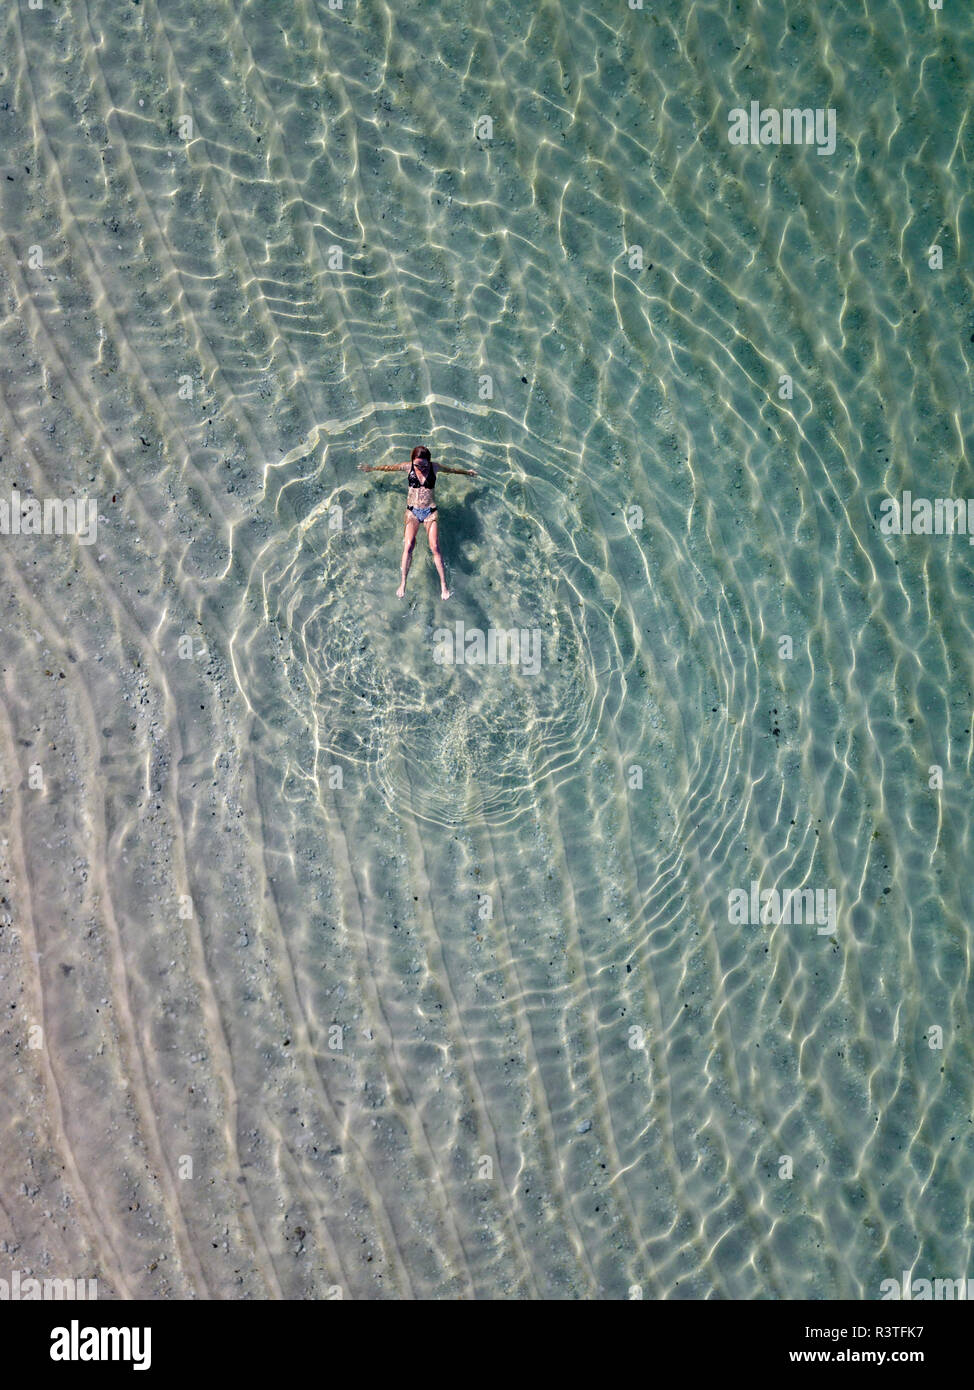 Indonesia, Bali, vista aerea del Karma Kandara beach, una donna galleggianti in acqua Foto Stock